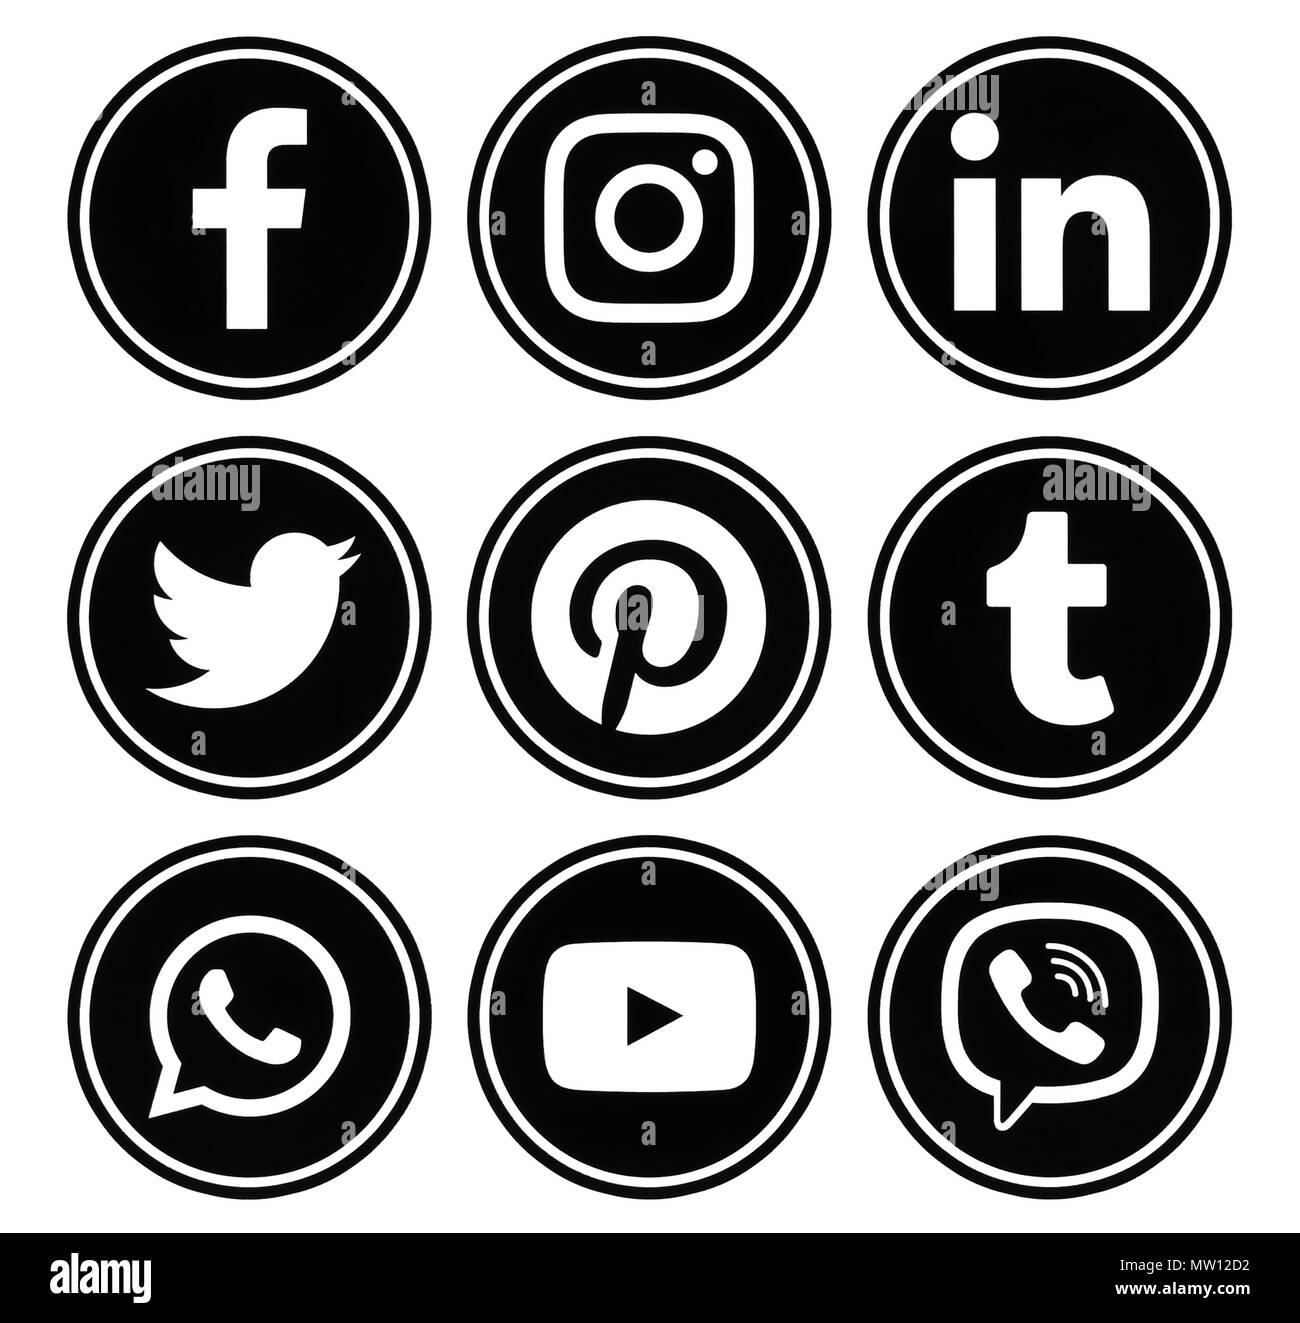 Kiev, Ukraine - le 08 décembre 2017 : cercle populaires médias sociaux logos noir avec bord imprimée sur du papier : Facebook, Twitter, Instagram, Pinterest, LinkedI Banque D'Images